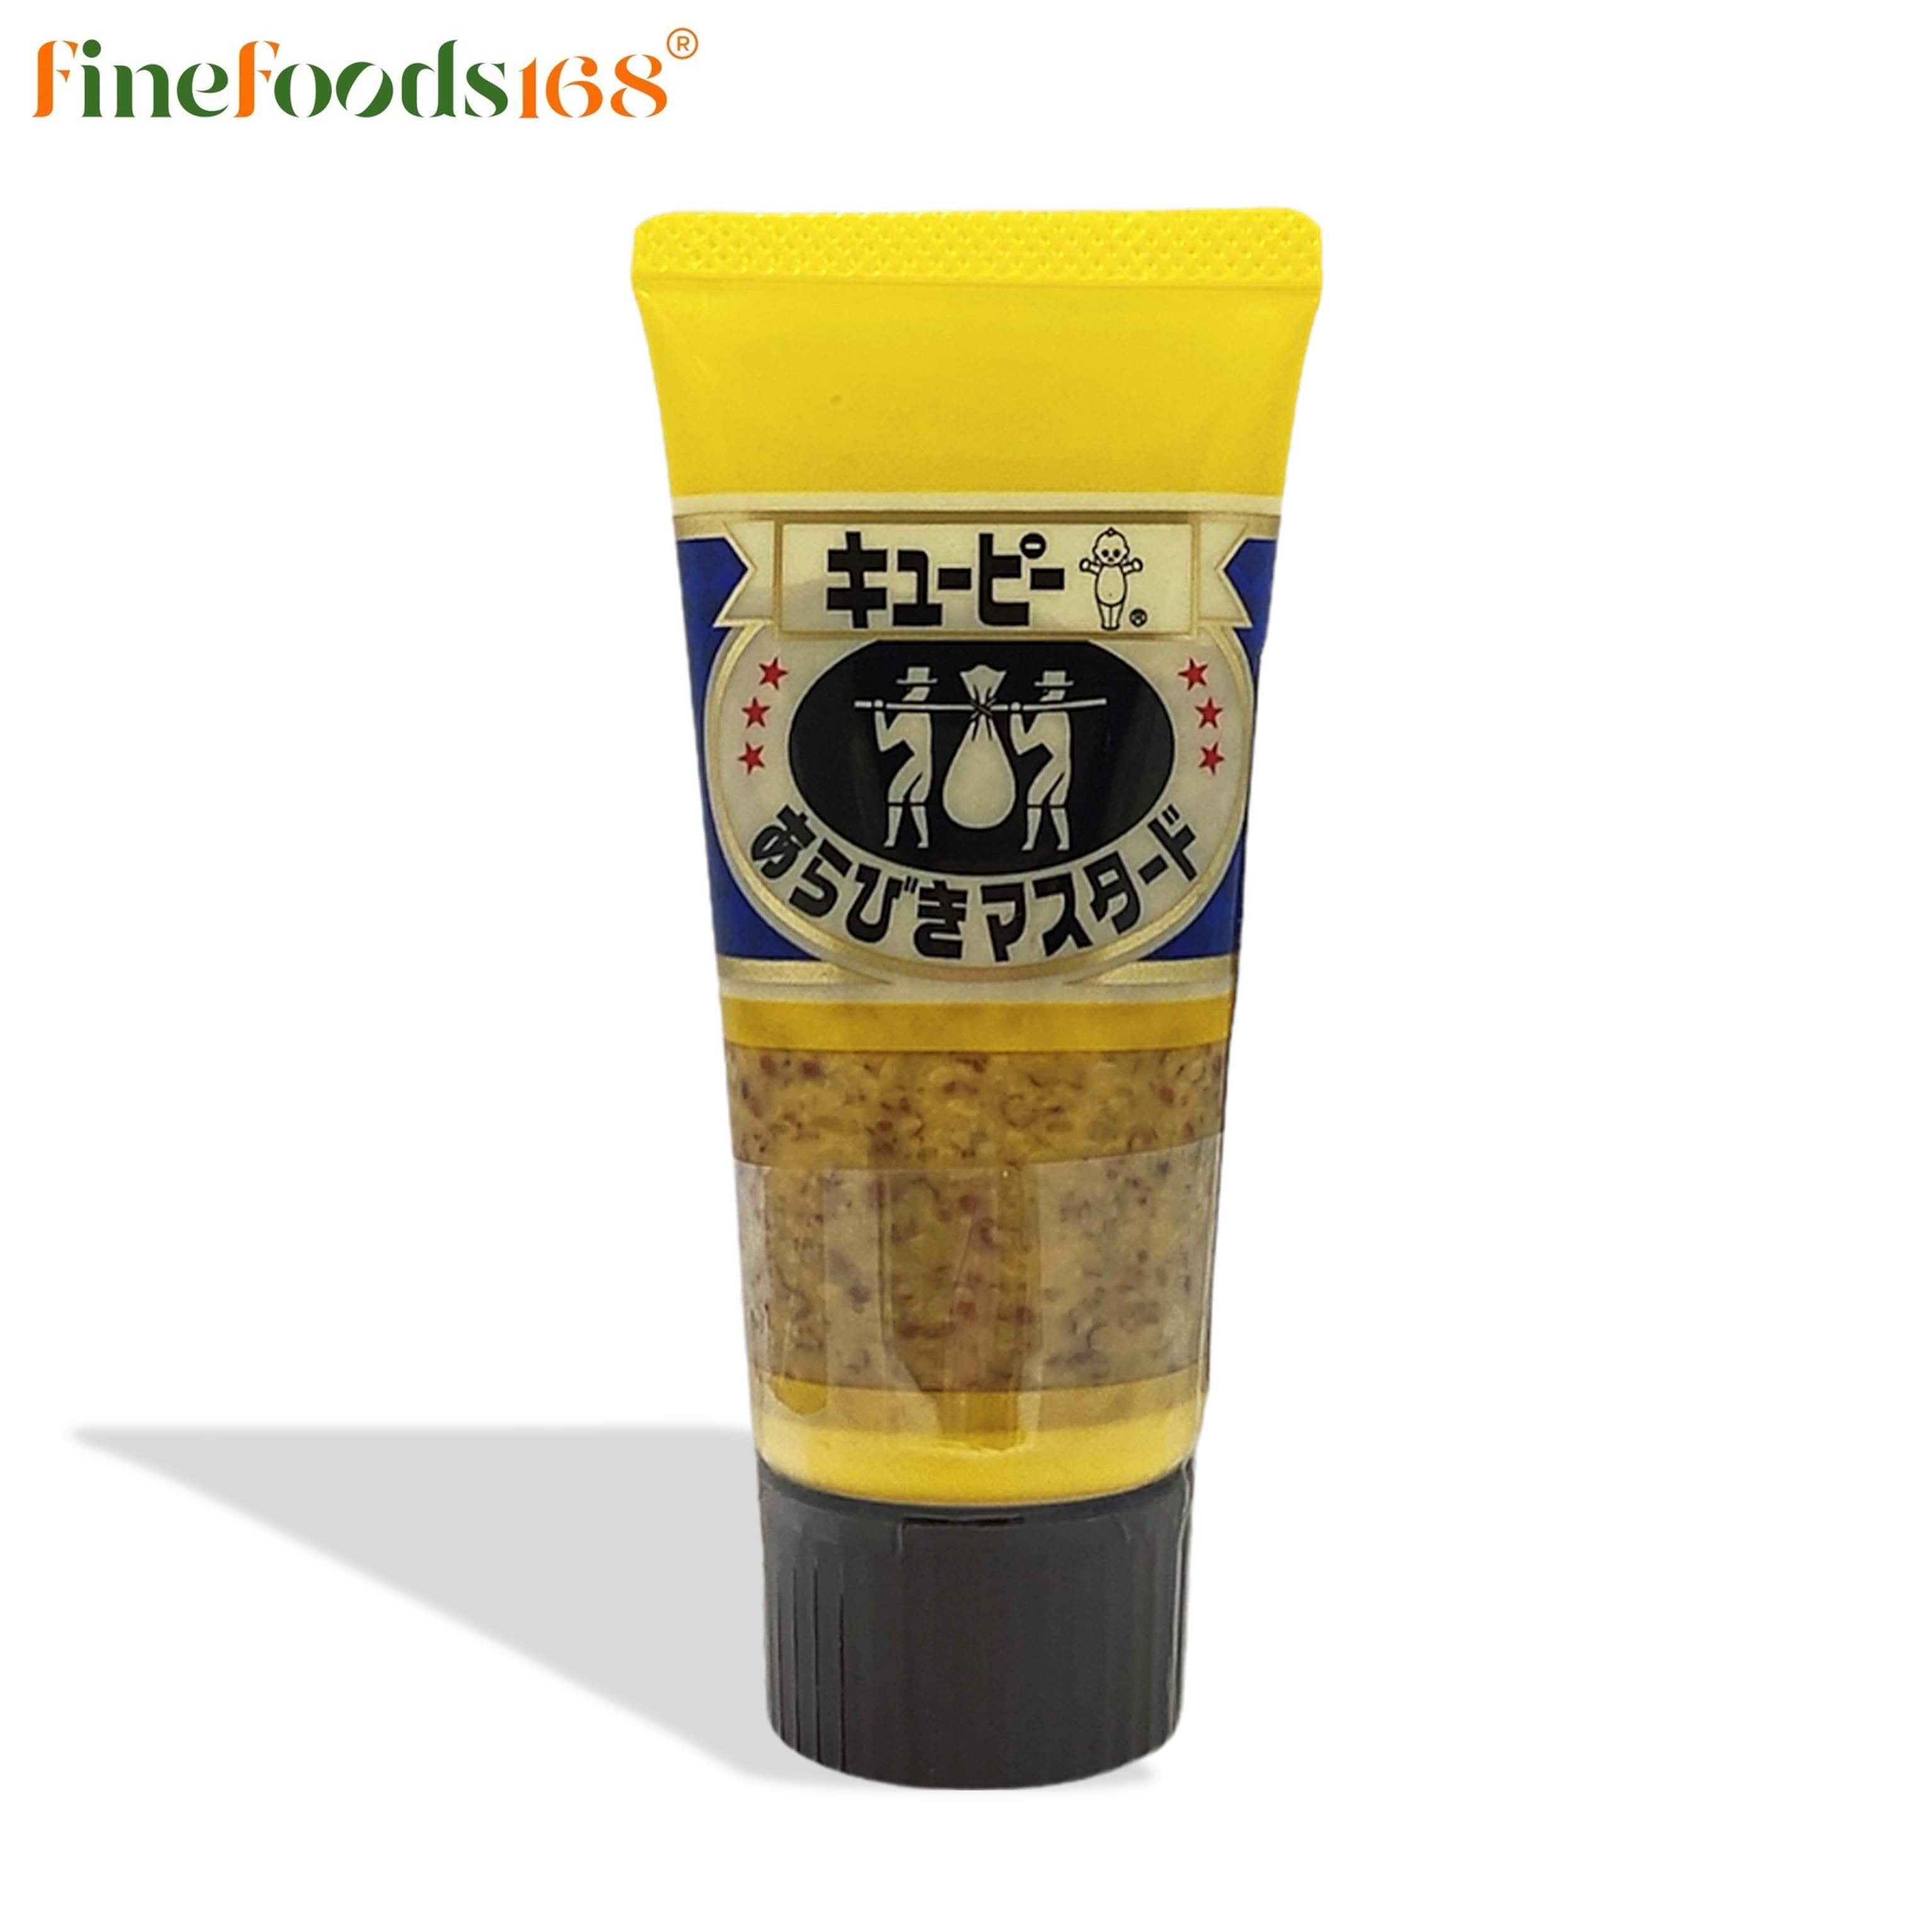 คิวพี ซอสมัสตาร์ด 50 กรัม Kewpie Grain Type Mustard 50 g.